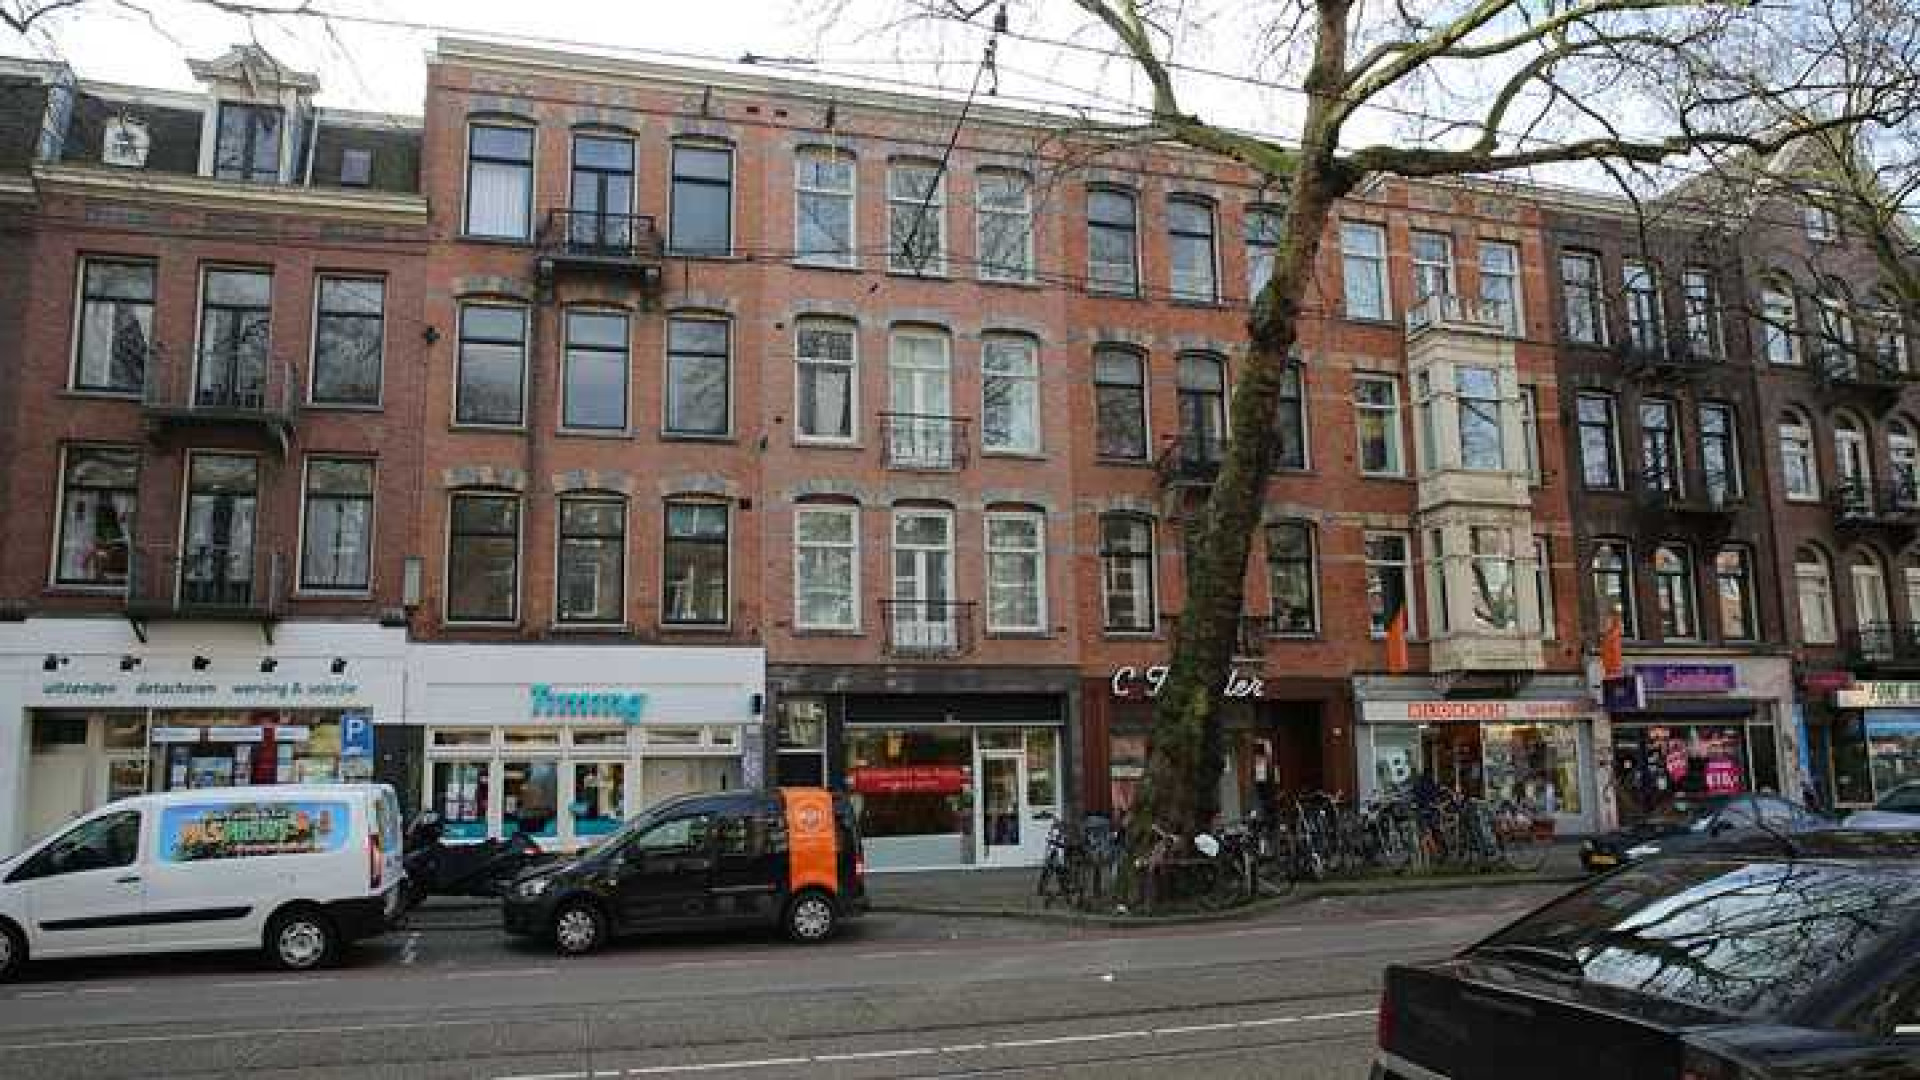 Dit is Amsterdamse huis regisseur beste film 2013. Zie foto's